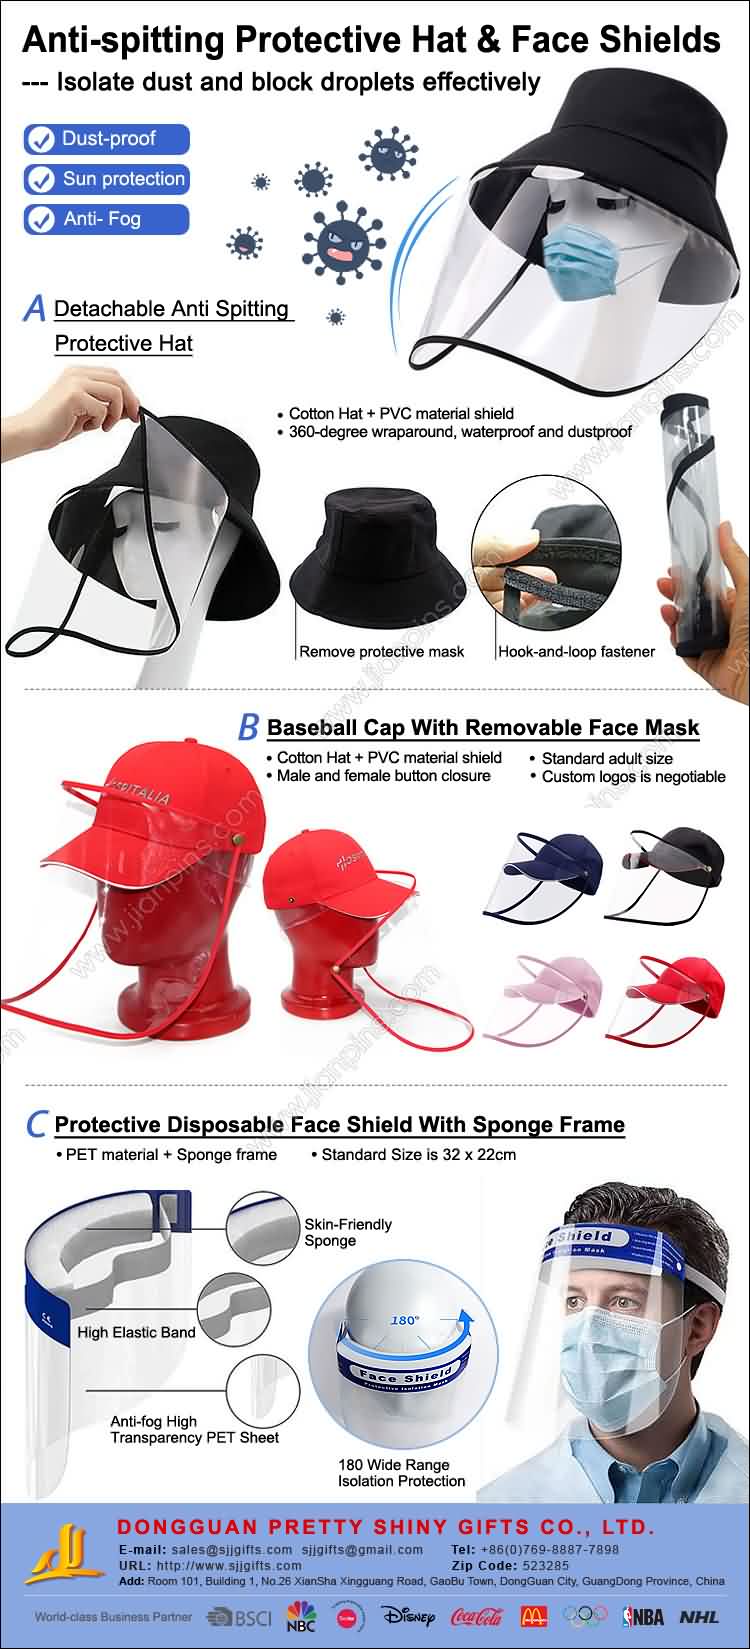 หมวกป้องกันและกระบังหน้าป้องกันการคายน้ำ